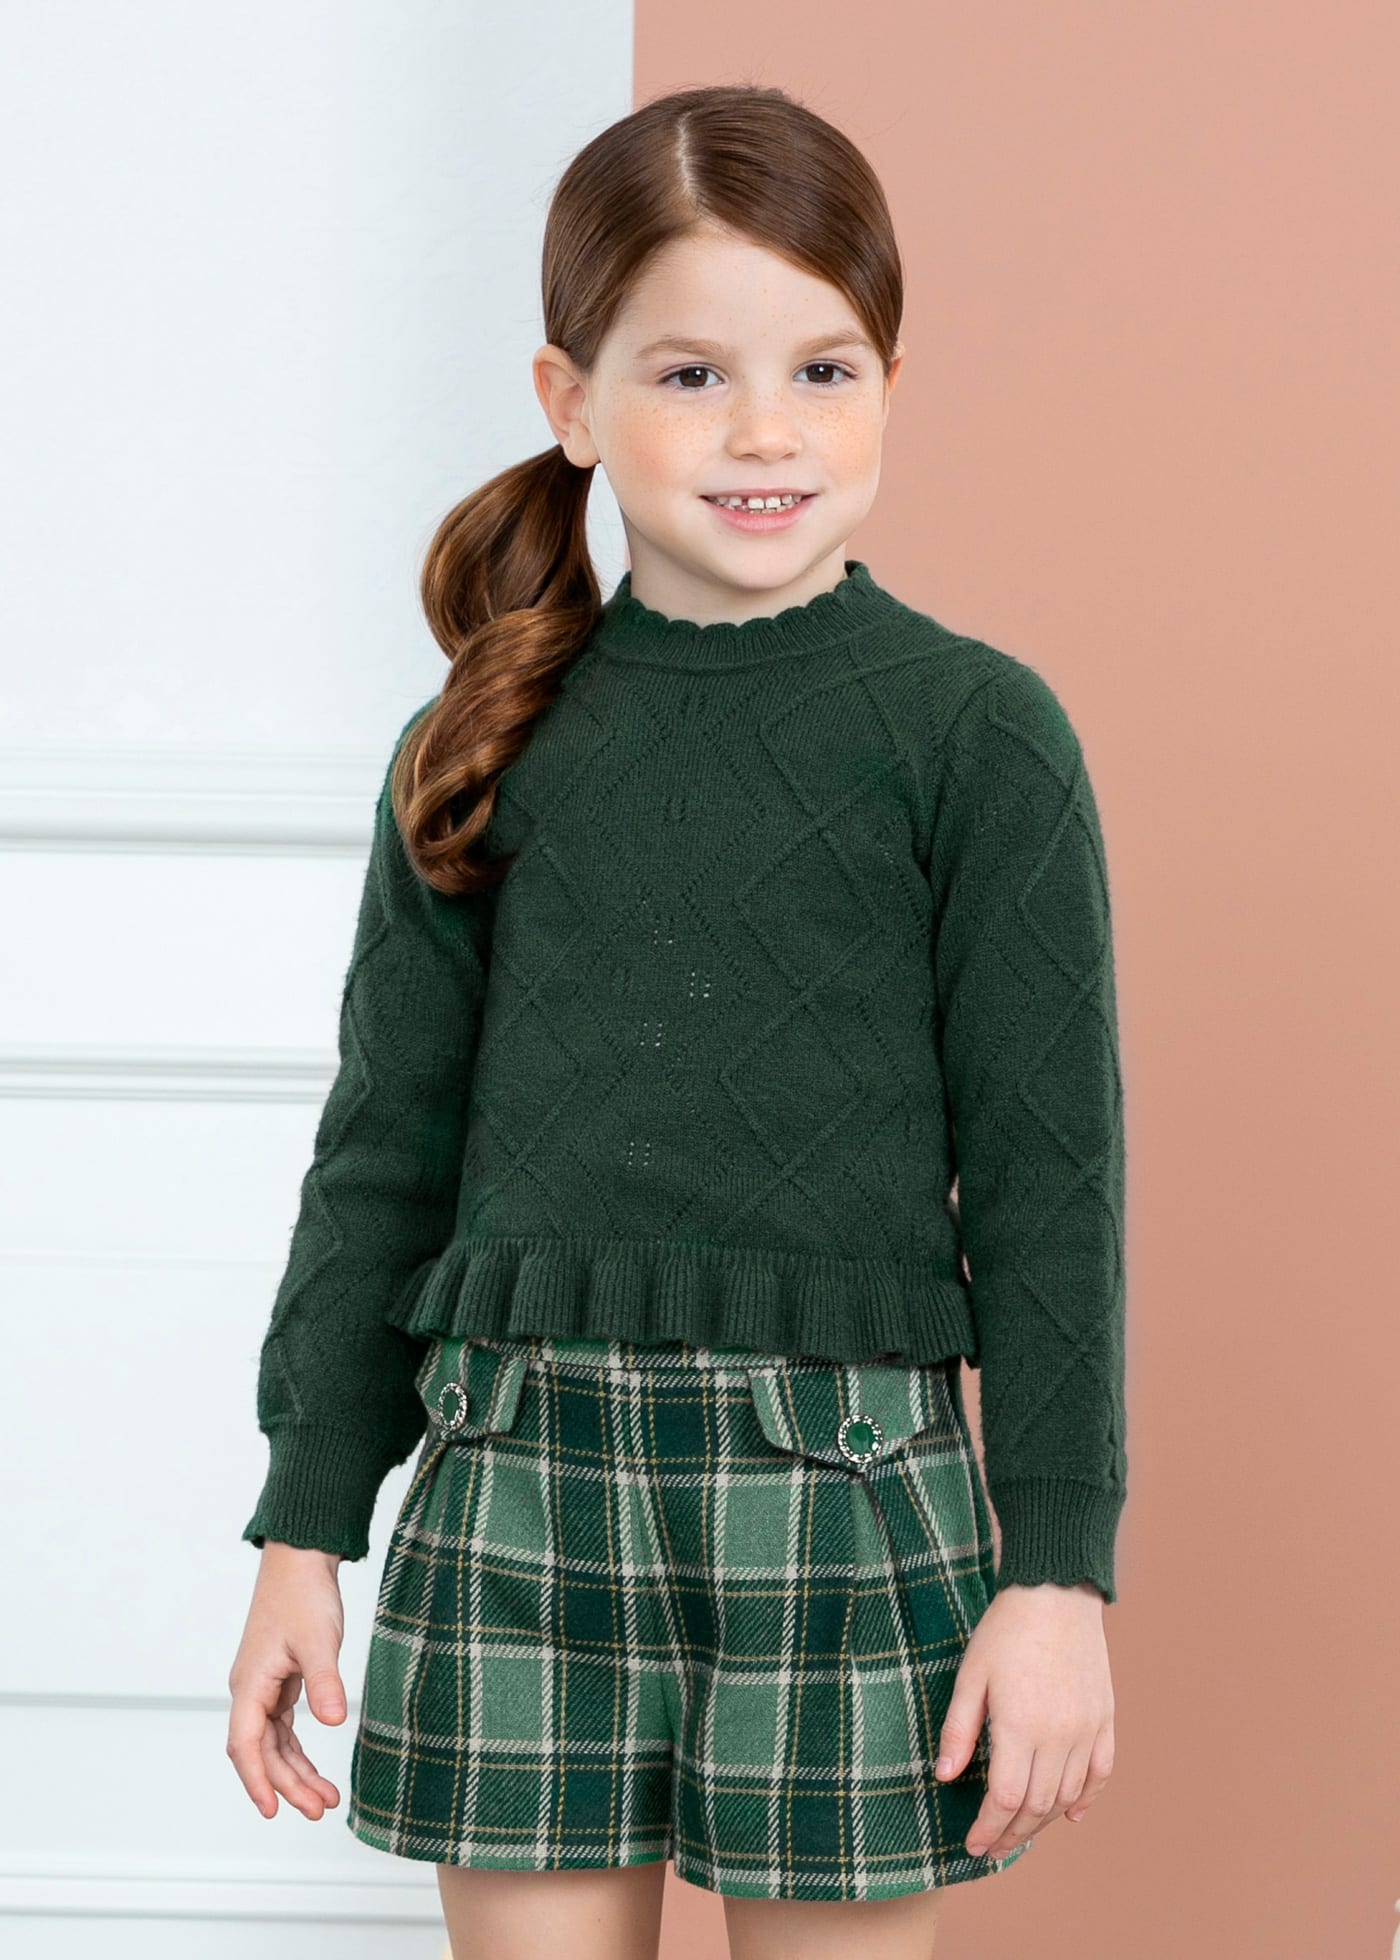 Camisola tricot menina